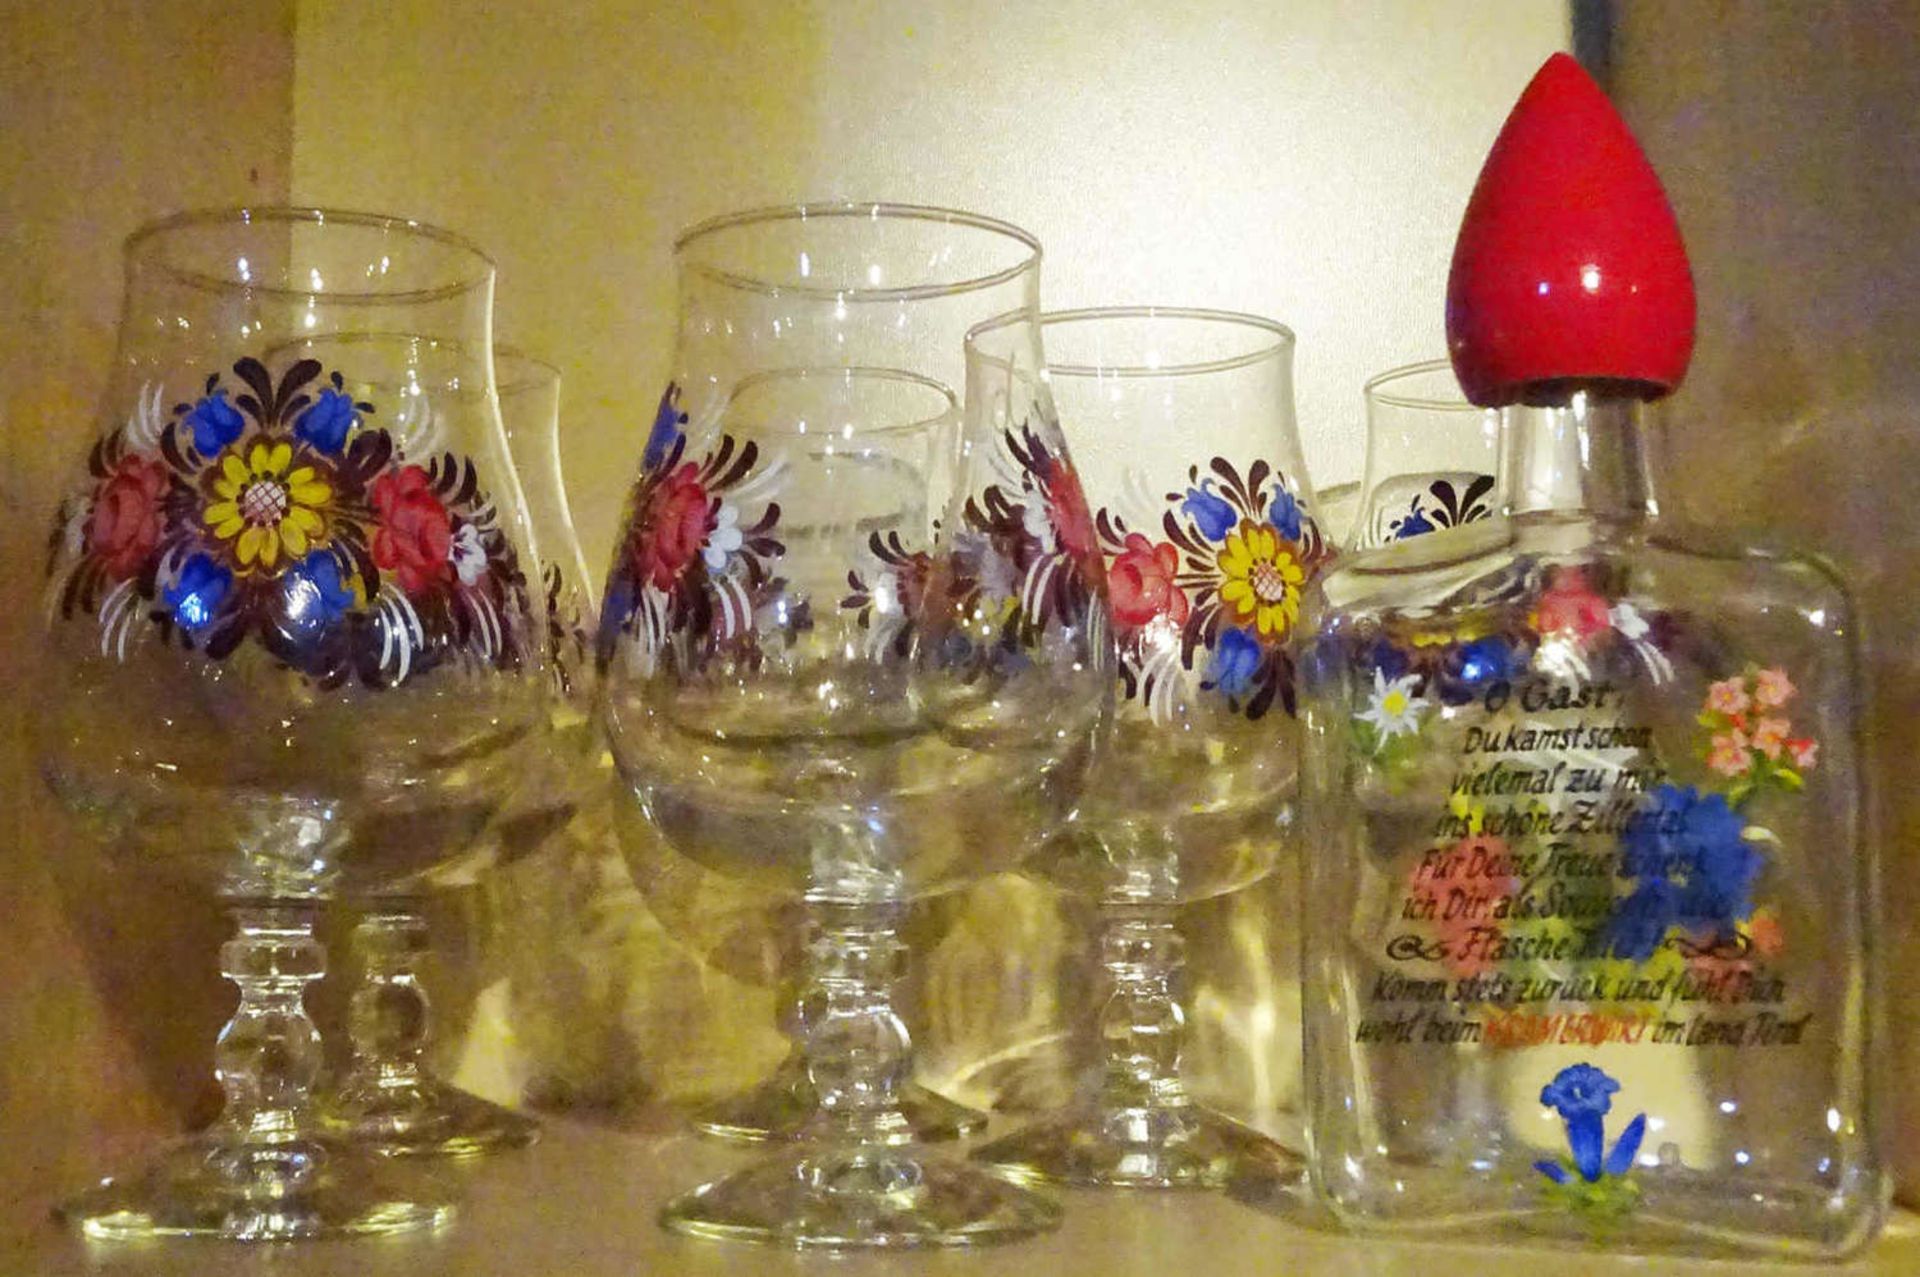 6 Biergläser mit Blumenmalerei, 1 Glas mit Gravur "Ingrid", sowie 1 Schnapsflasche, ebenfalls mit - Bild 2 aus 2